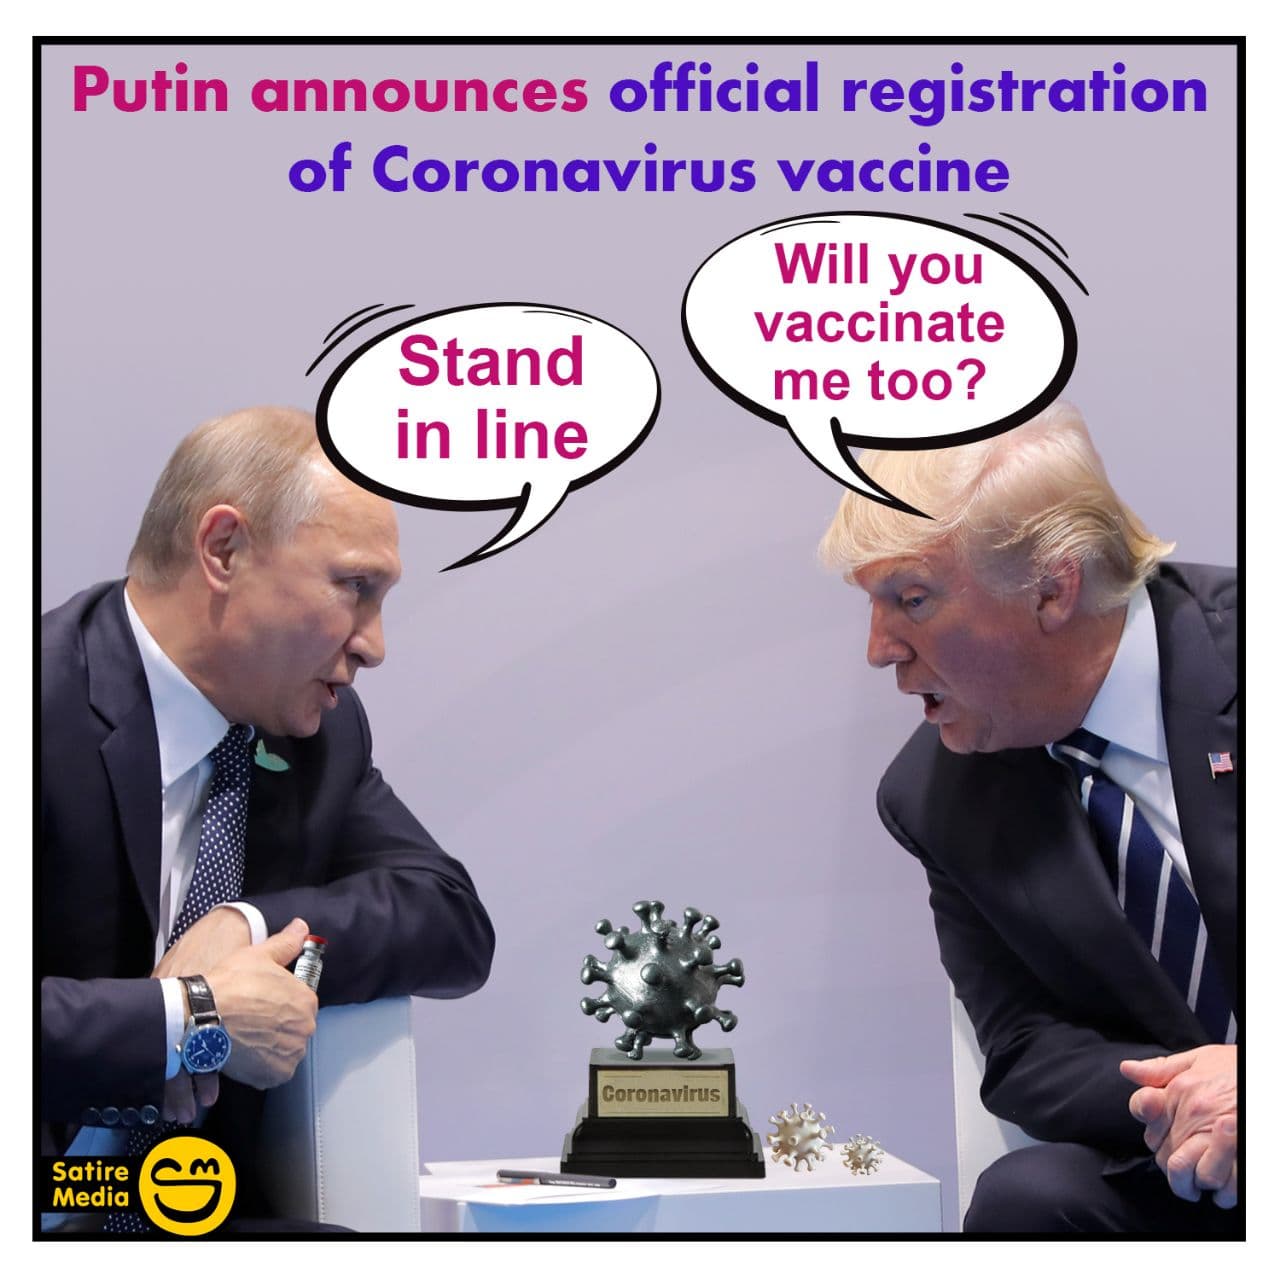 Putin announces official registration of Coronavirus vaccine